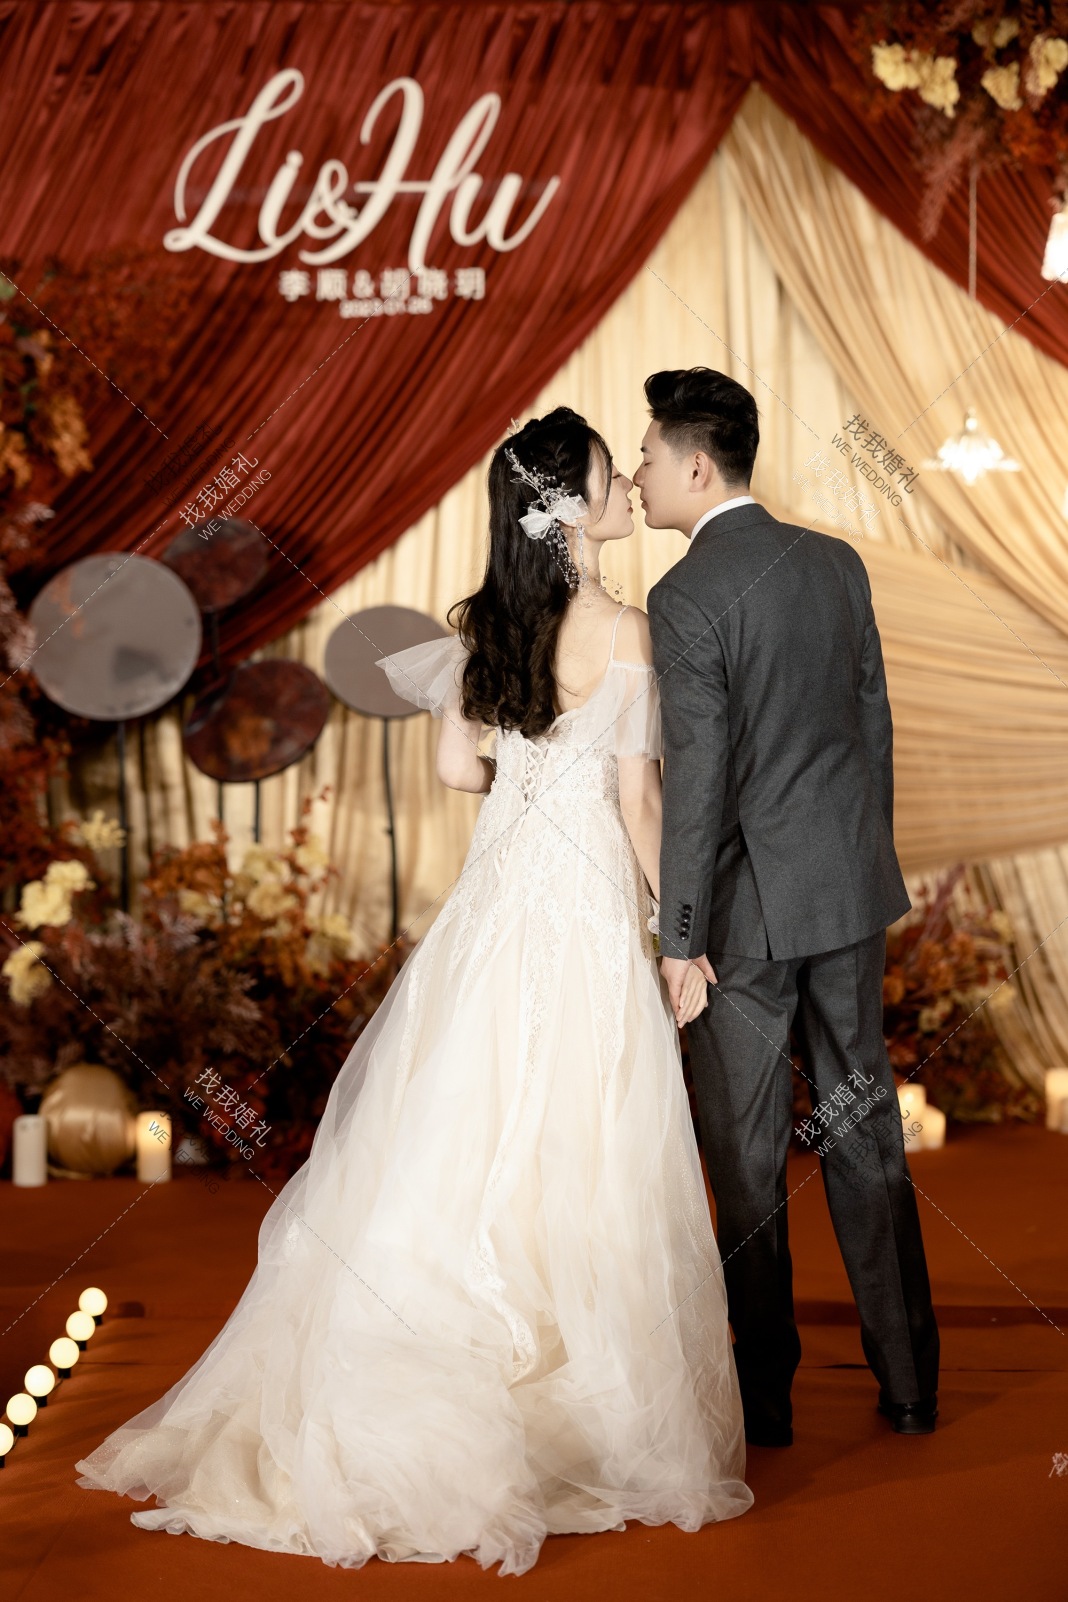 真实婚礼 | 轻柔的浪漫 | 布幔与纱幔交织下的爱意缱绻 - 最新资讯 - 婚礼风尚